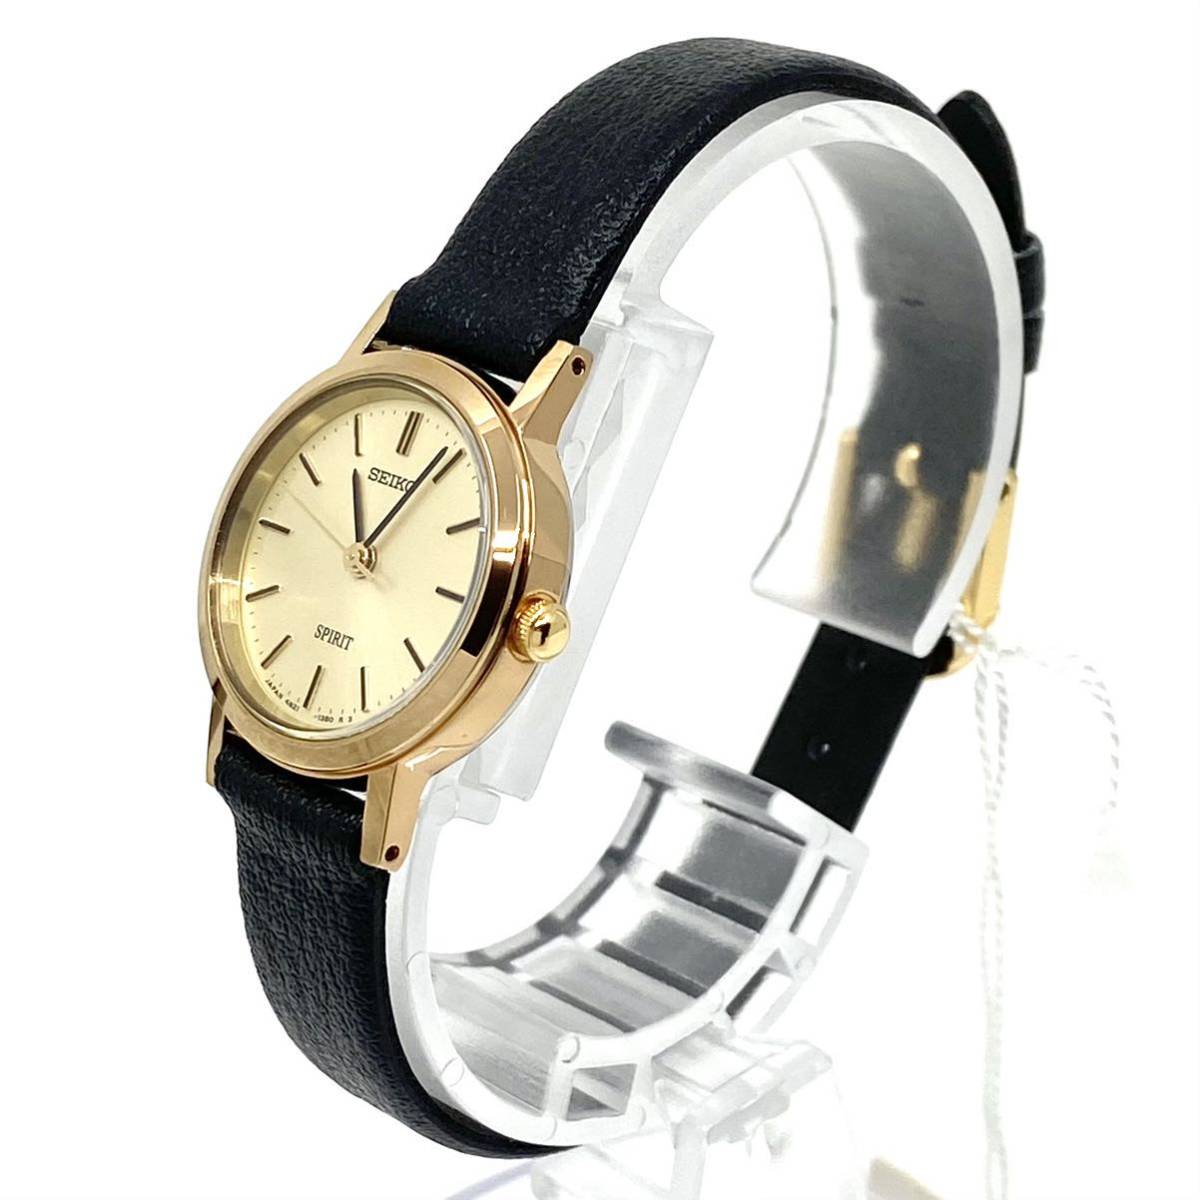 未使用 箱付き SEIKO SPIRIT 腕時計 ラウンド バーインデックス クォーツ quartz ゴールド ブラック 金 黒 セイコー スピリット Y322_画像3